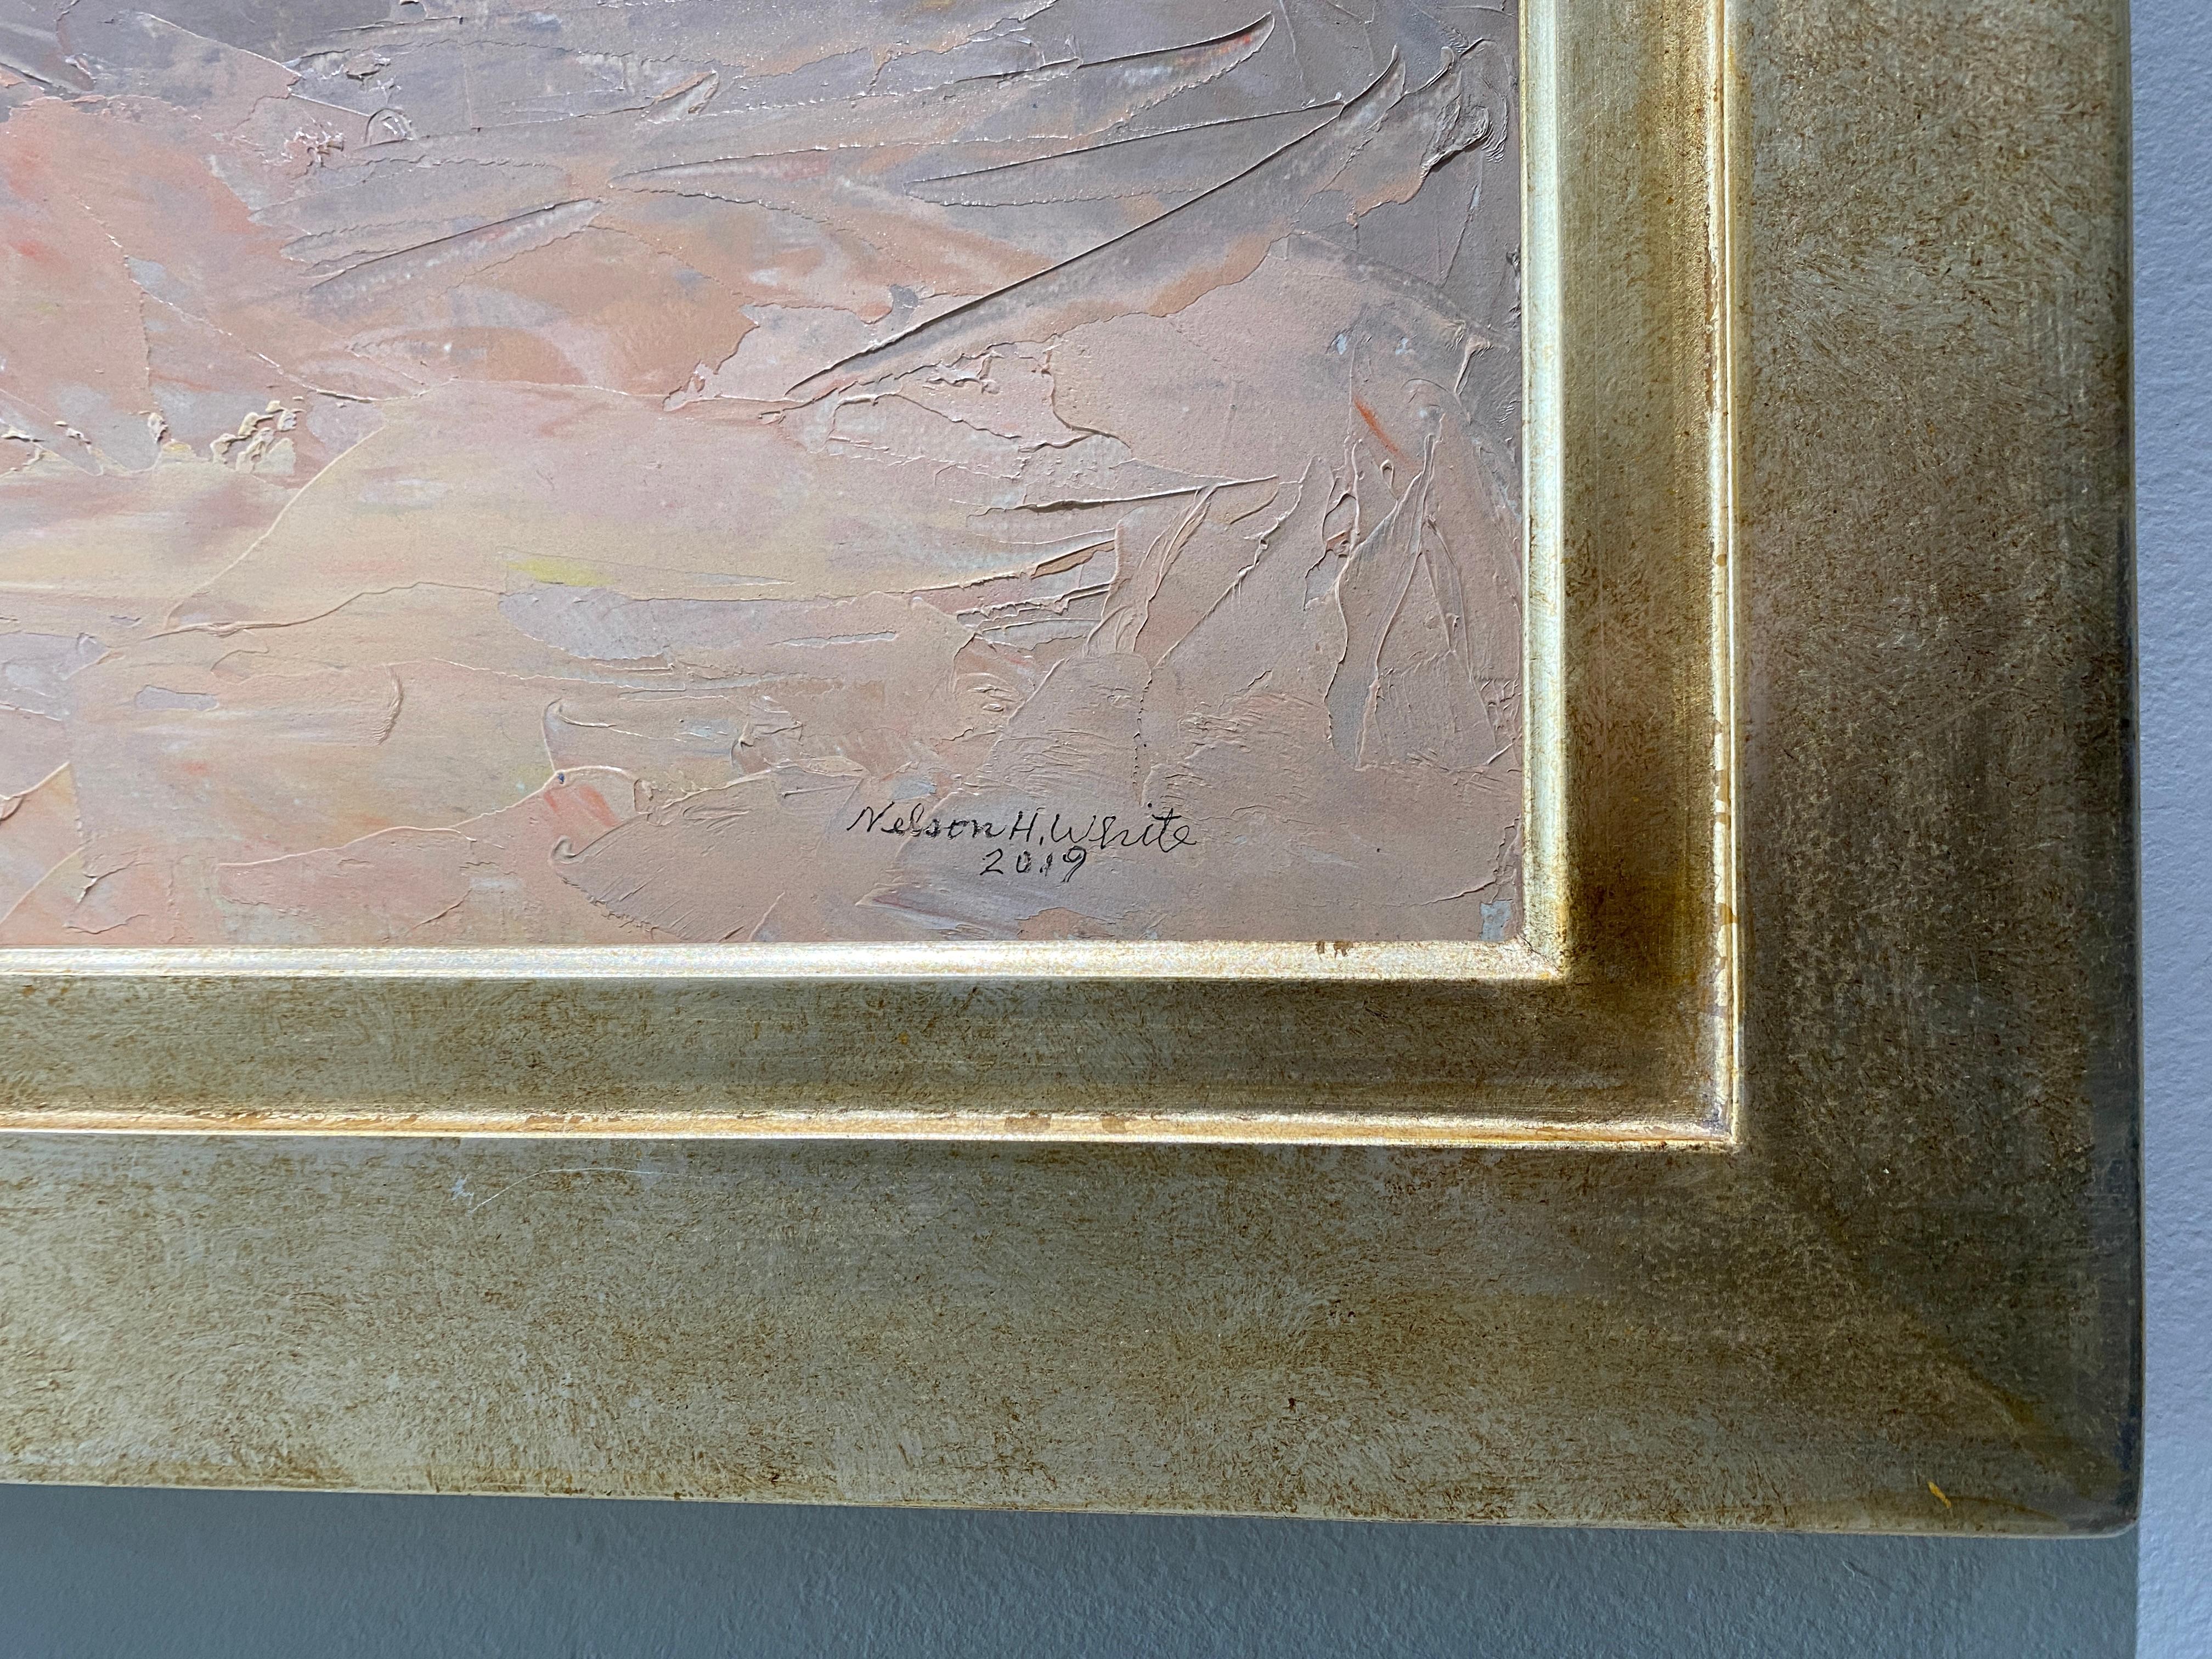 Une peinture classique de Nelson White en plein air. 

Dimensions encadrées : 24 x 38 pouces

Biographie de l'artiste :
Nelson H. White est né à New London, dans le Connecticut, en 1932. White a été entouré d'art et d'artistes dès sa naissance. Il a